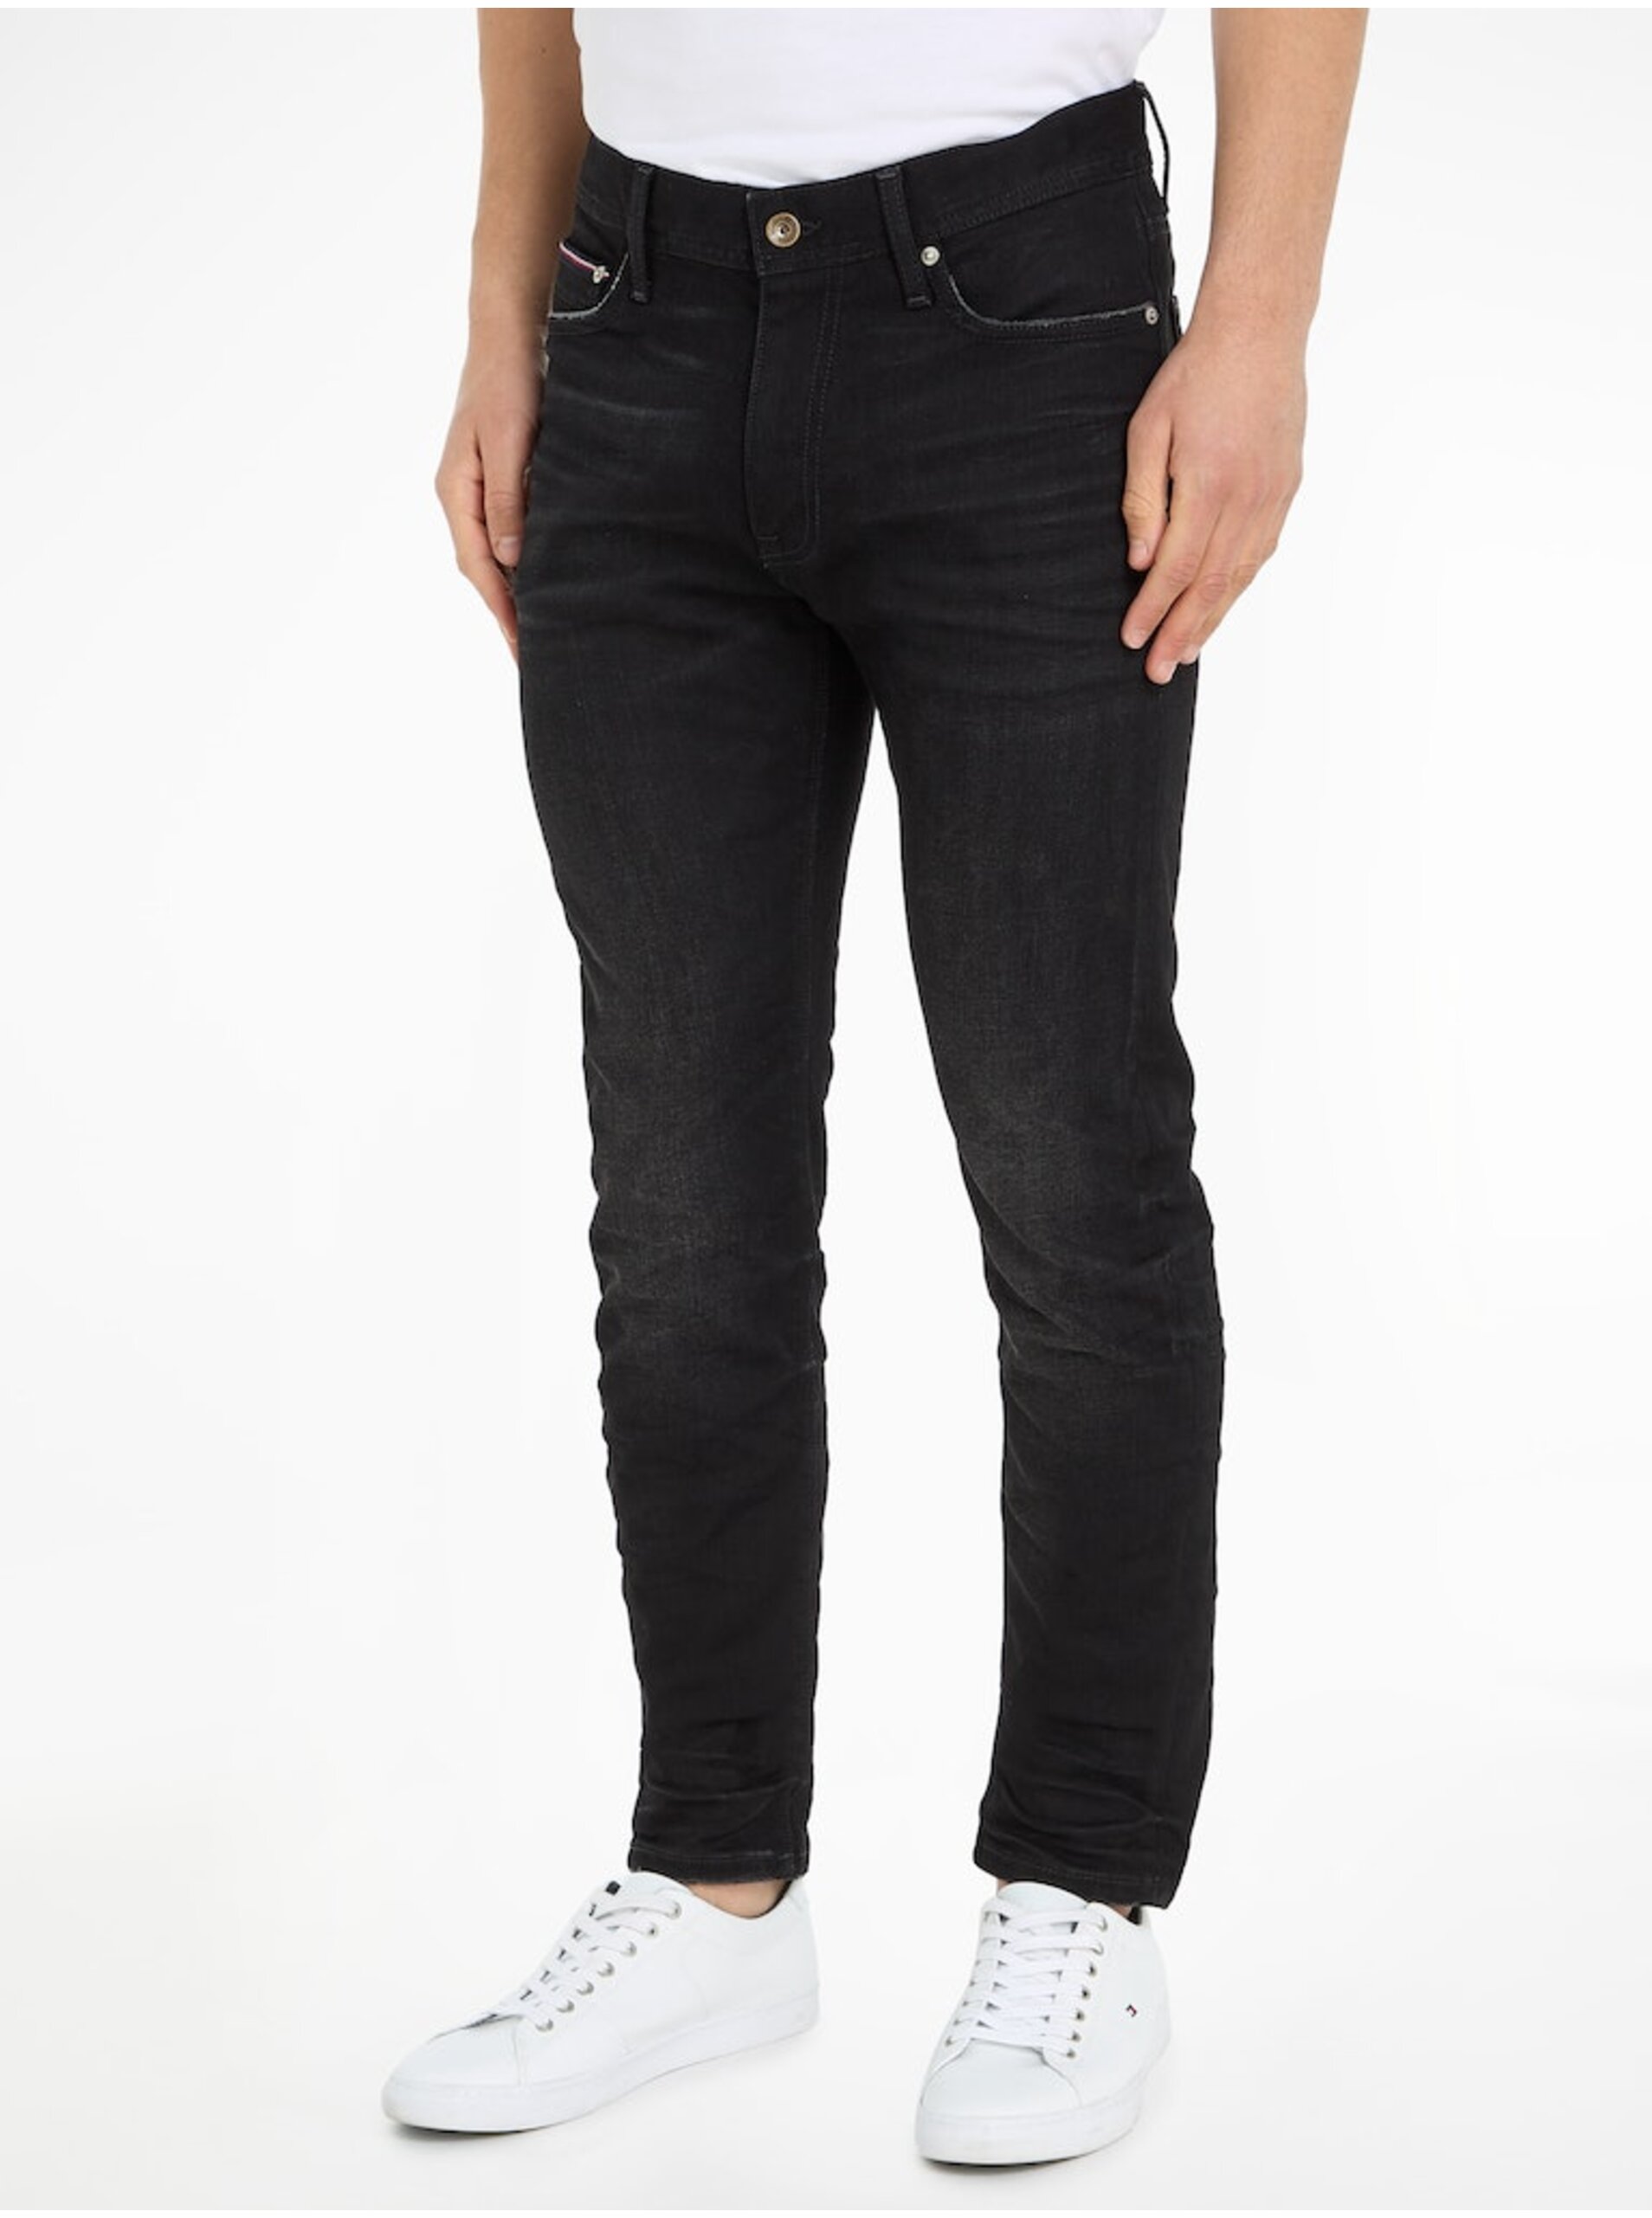 Black Men's Slim Fit Jeans Tommy Hilfiger Slim Bleecker - Men's